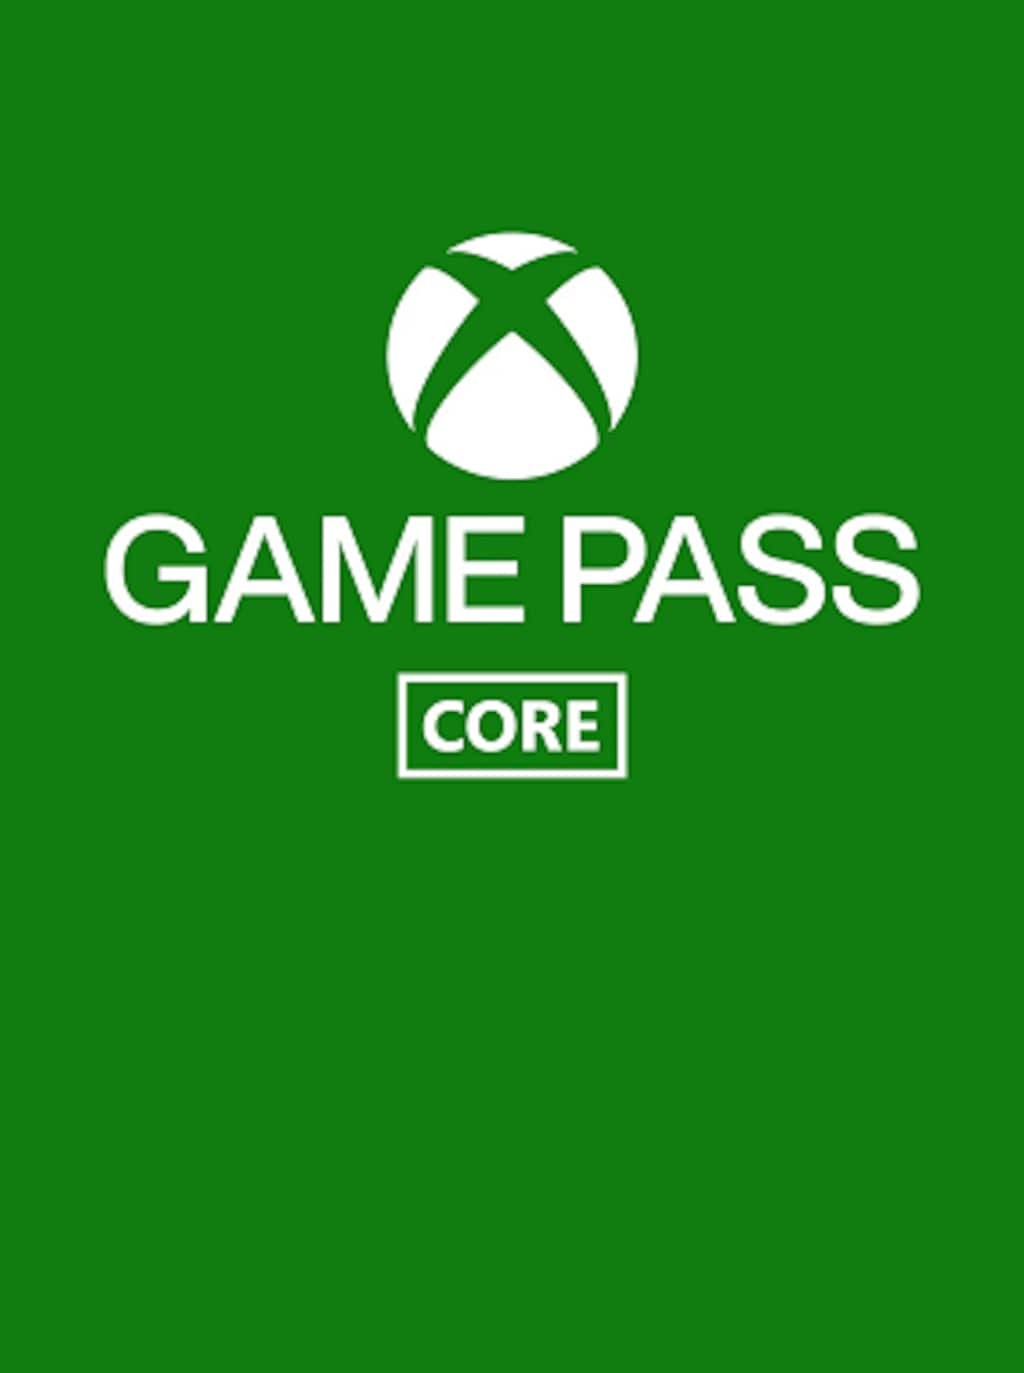 ⚡️ Bon Plan : 6 mois d'abonnement au Xbox Live Gold à 19,99€ au lieu de  29,99€